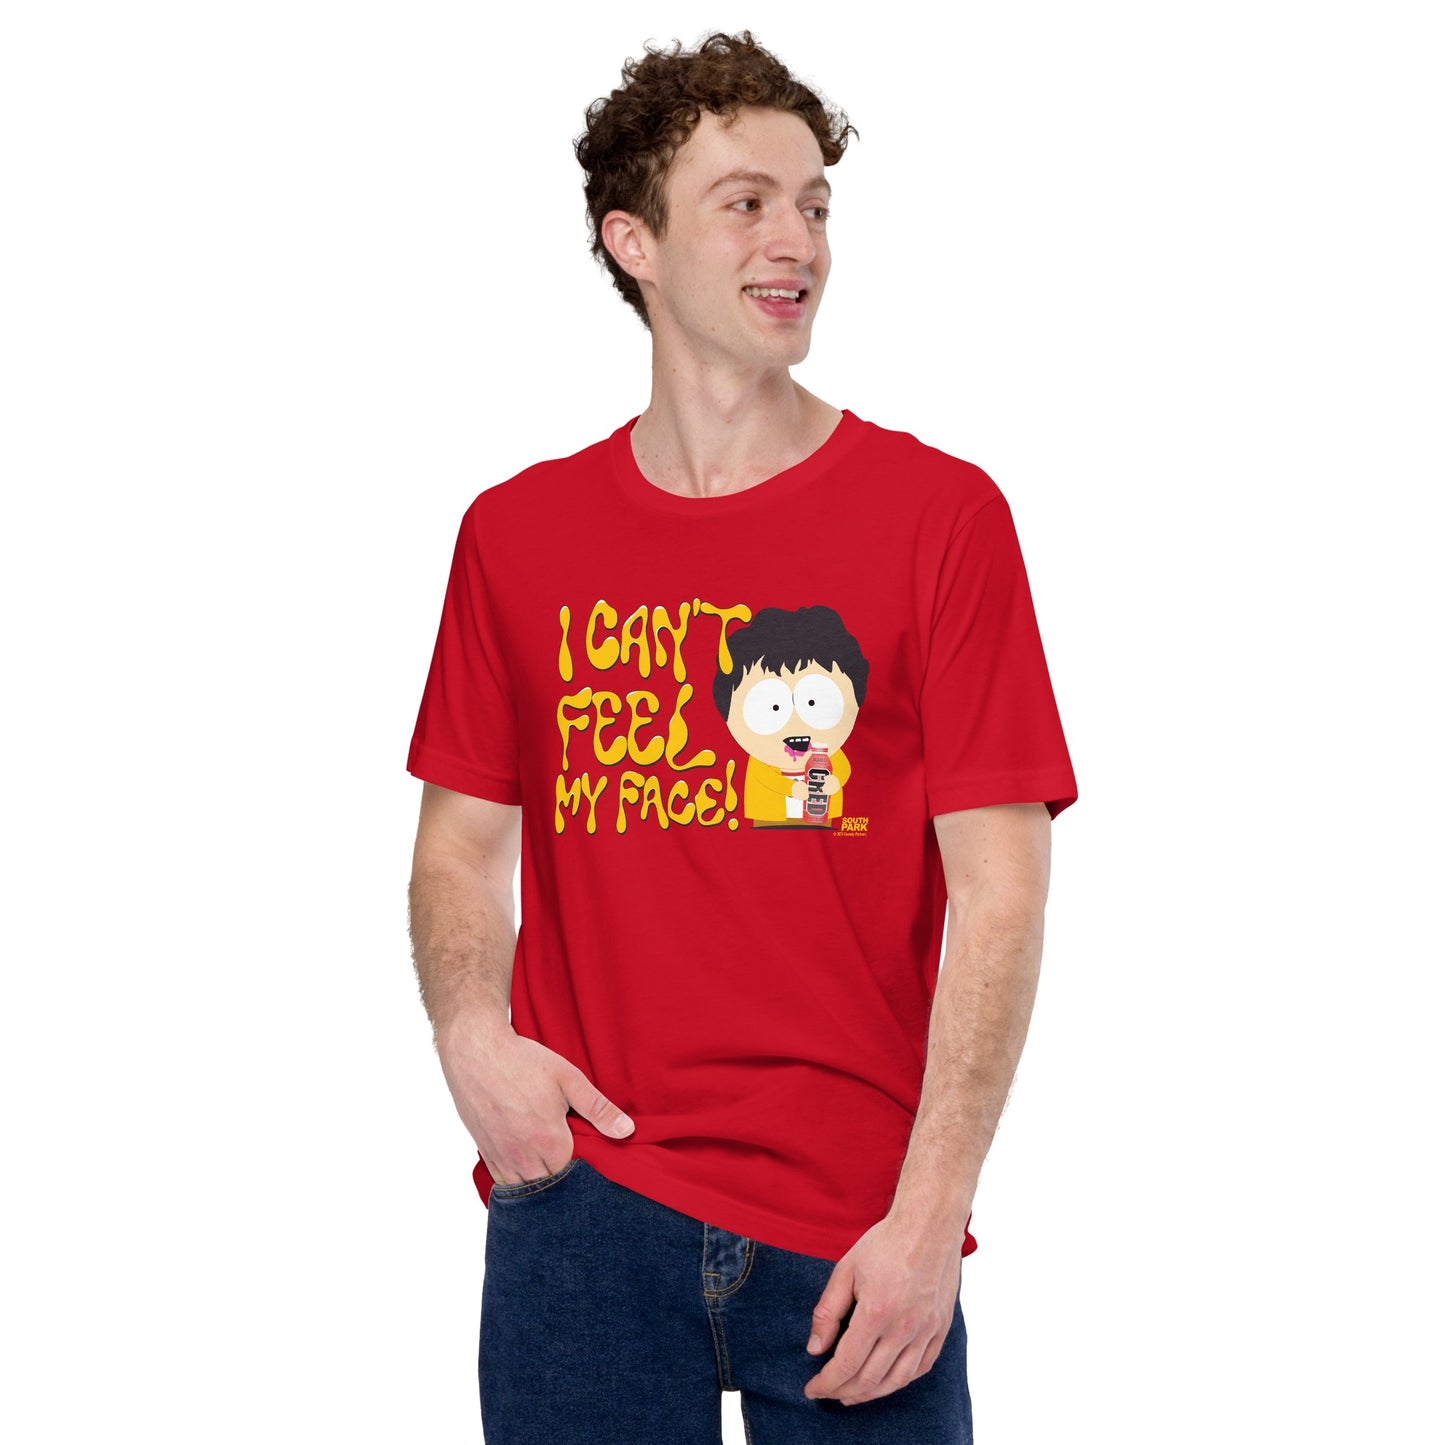 South Park Je ne sens plus mon visage CRED Adulte T-Shirt